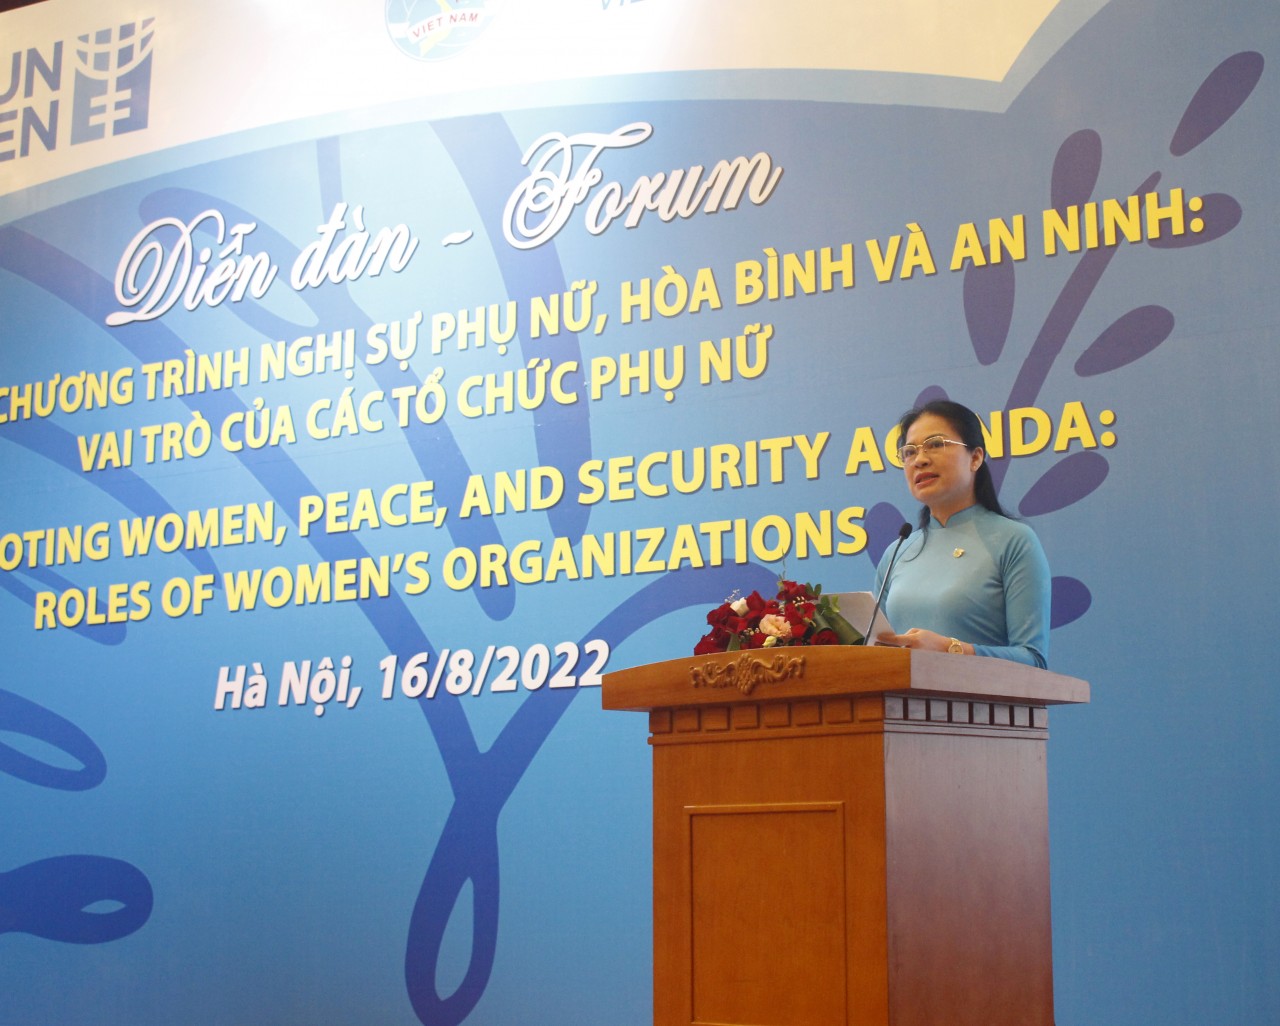 Thúc đẩy chương trình nghị sự phụ nữ, hòa bình và an ninh